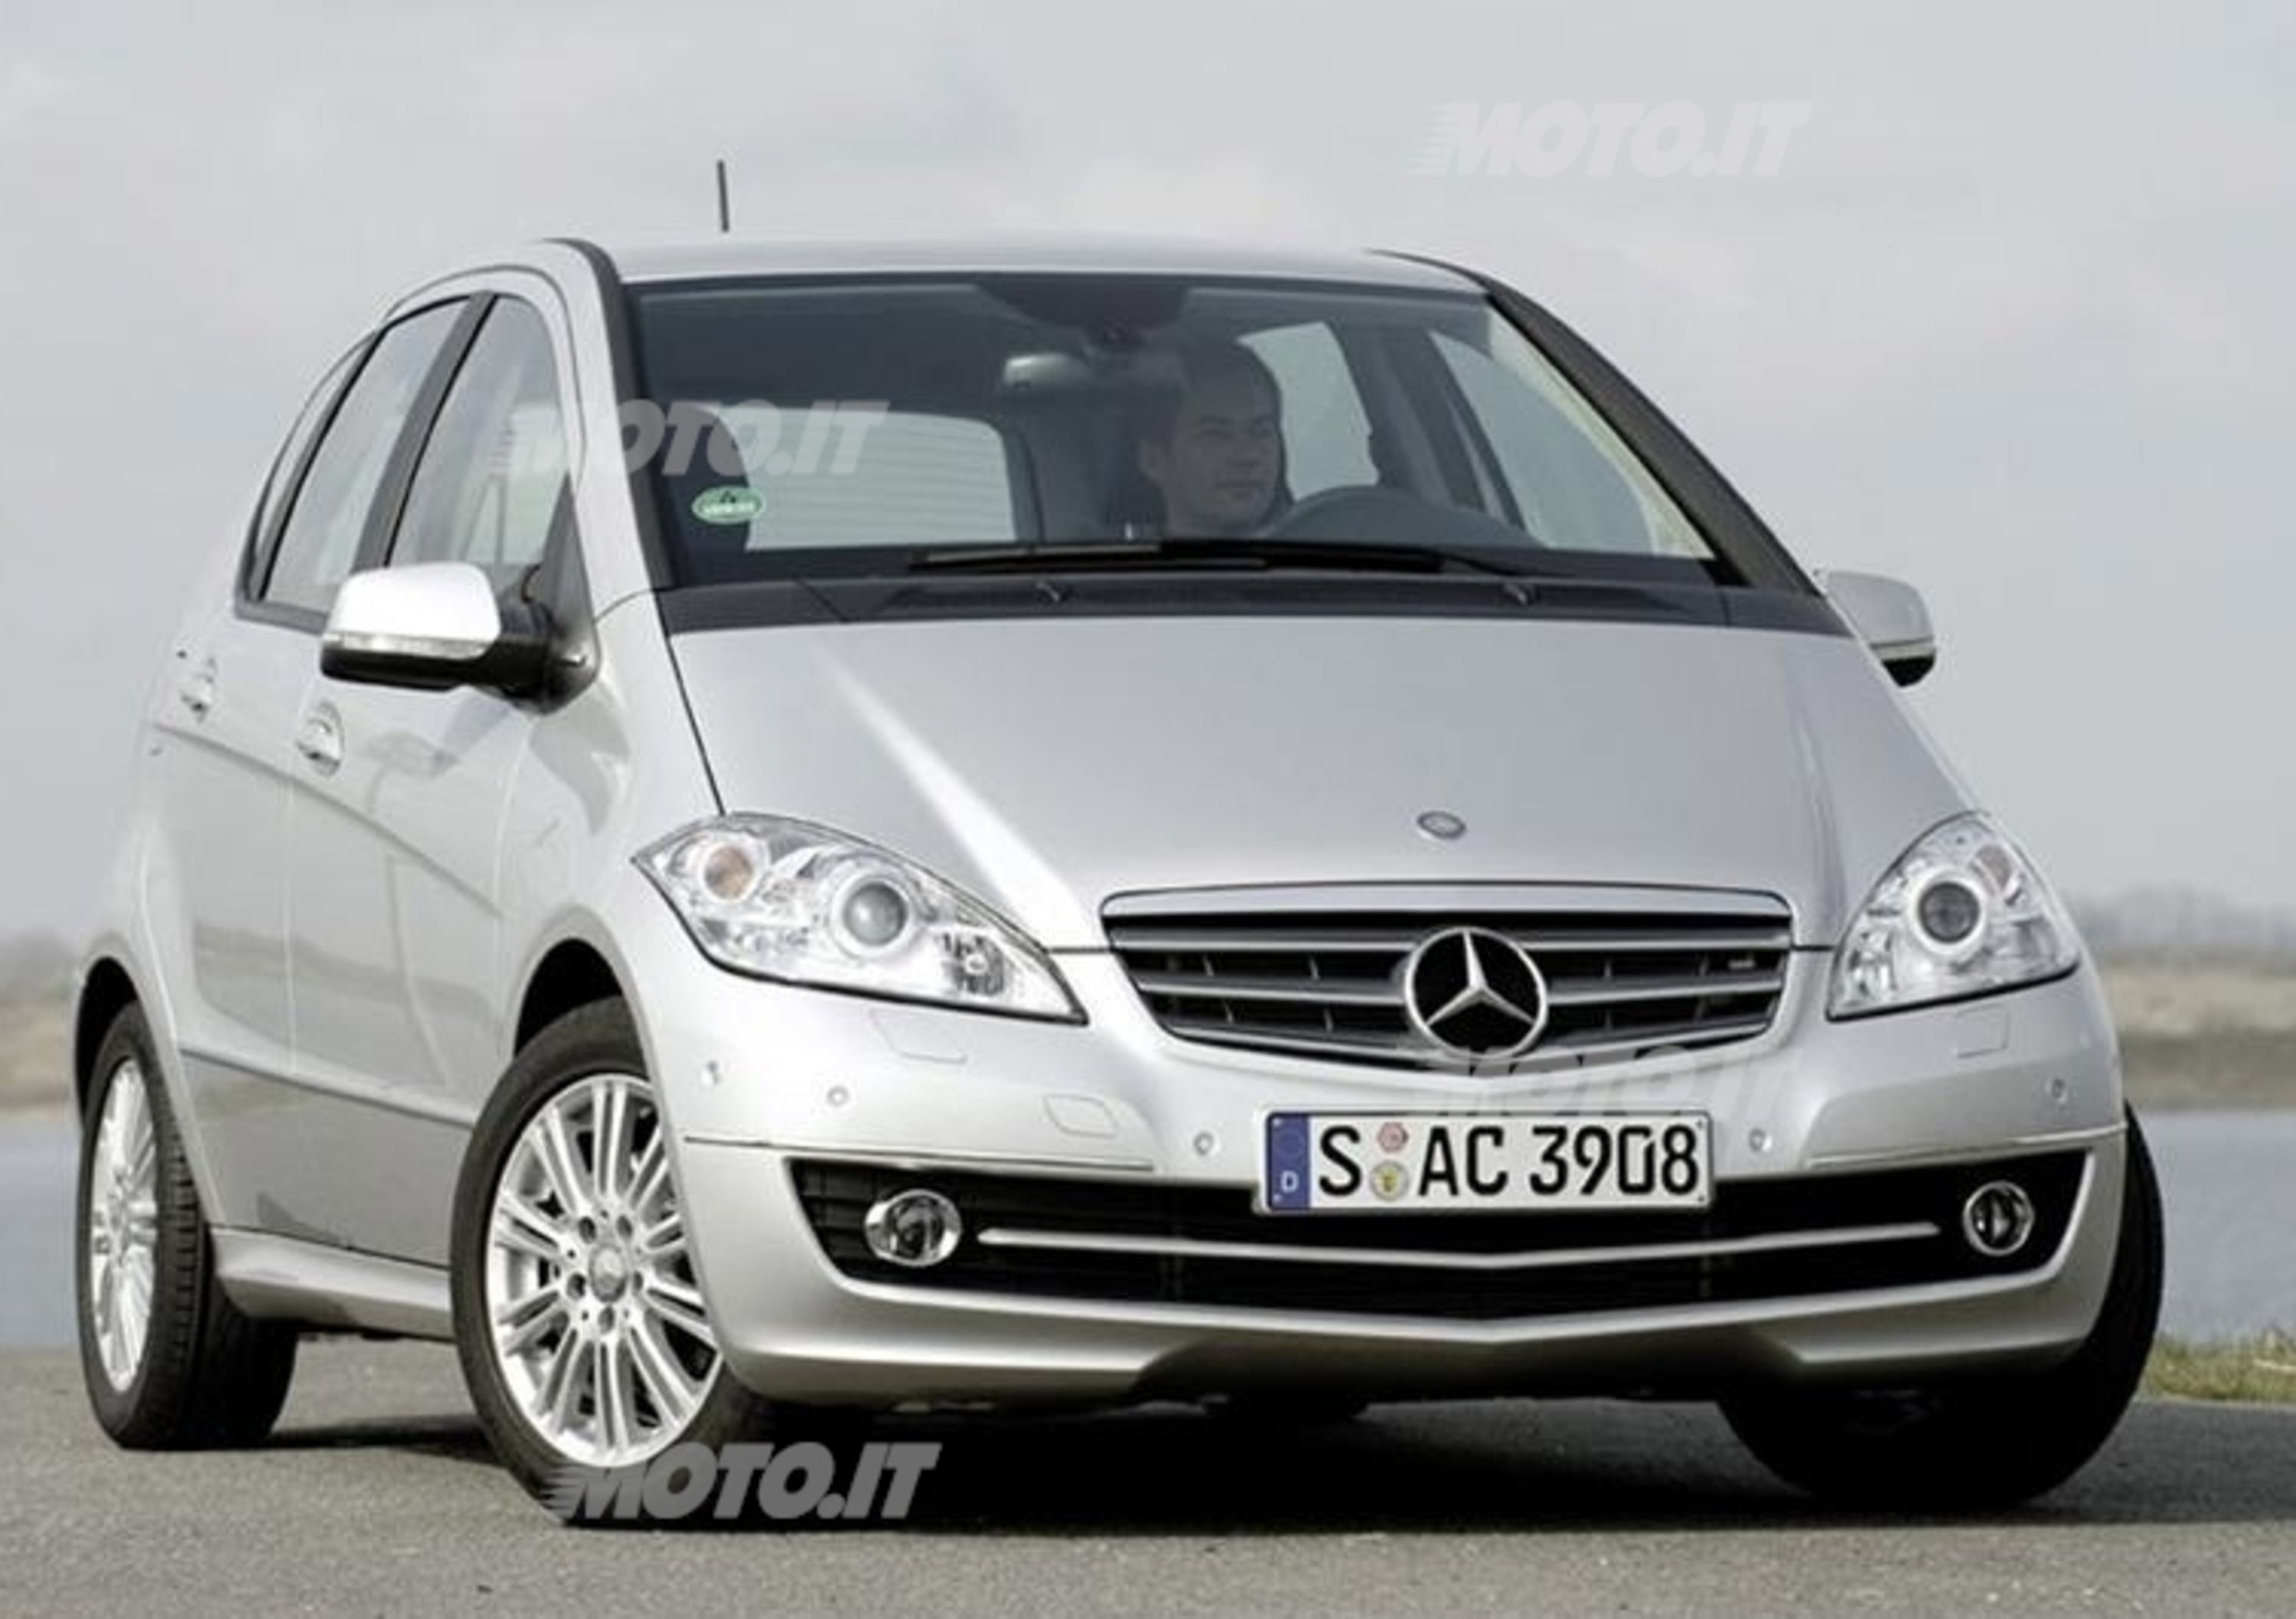 Mercedes-Benz Classe A: occasioni anche usate e garantite su Automoto.it